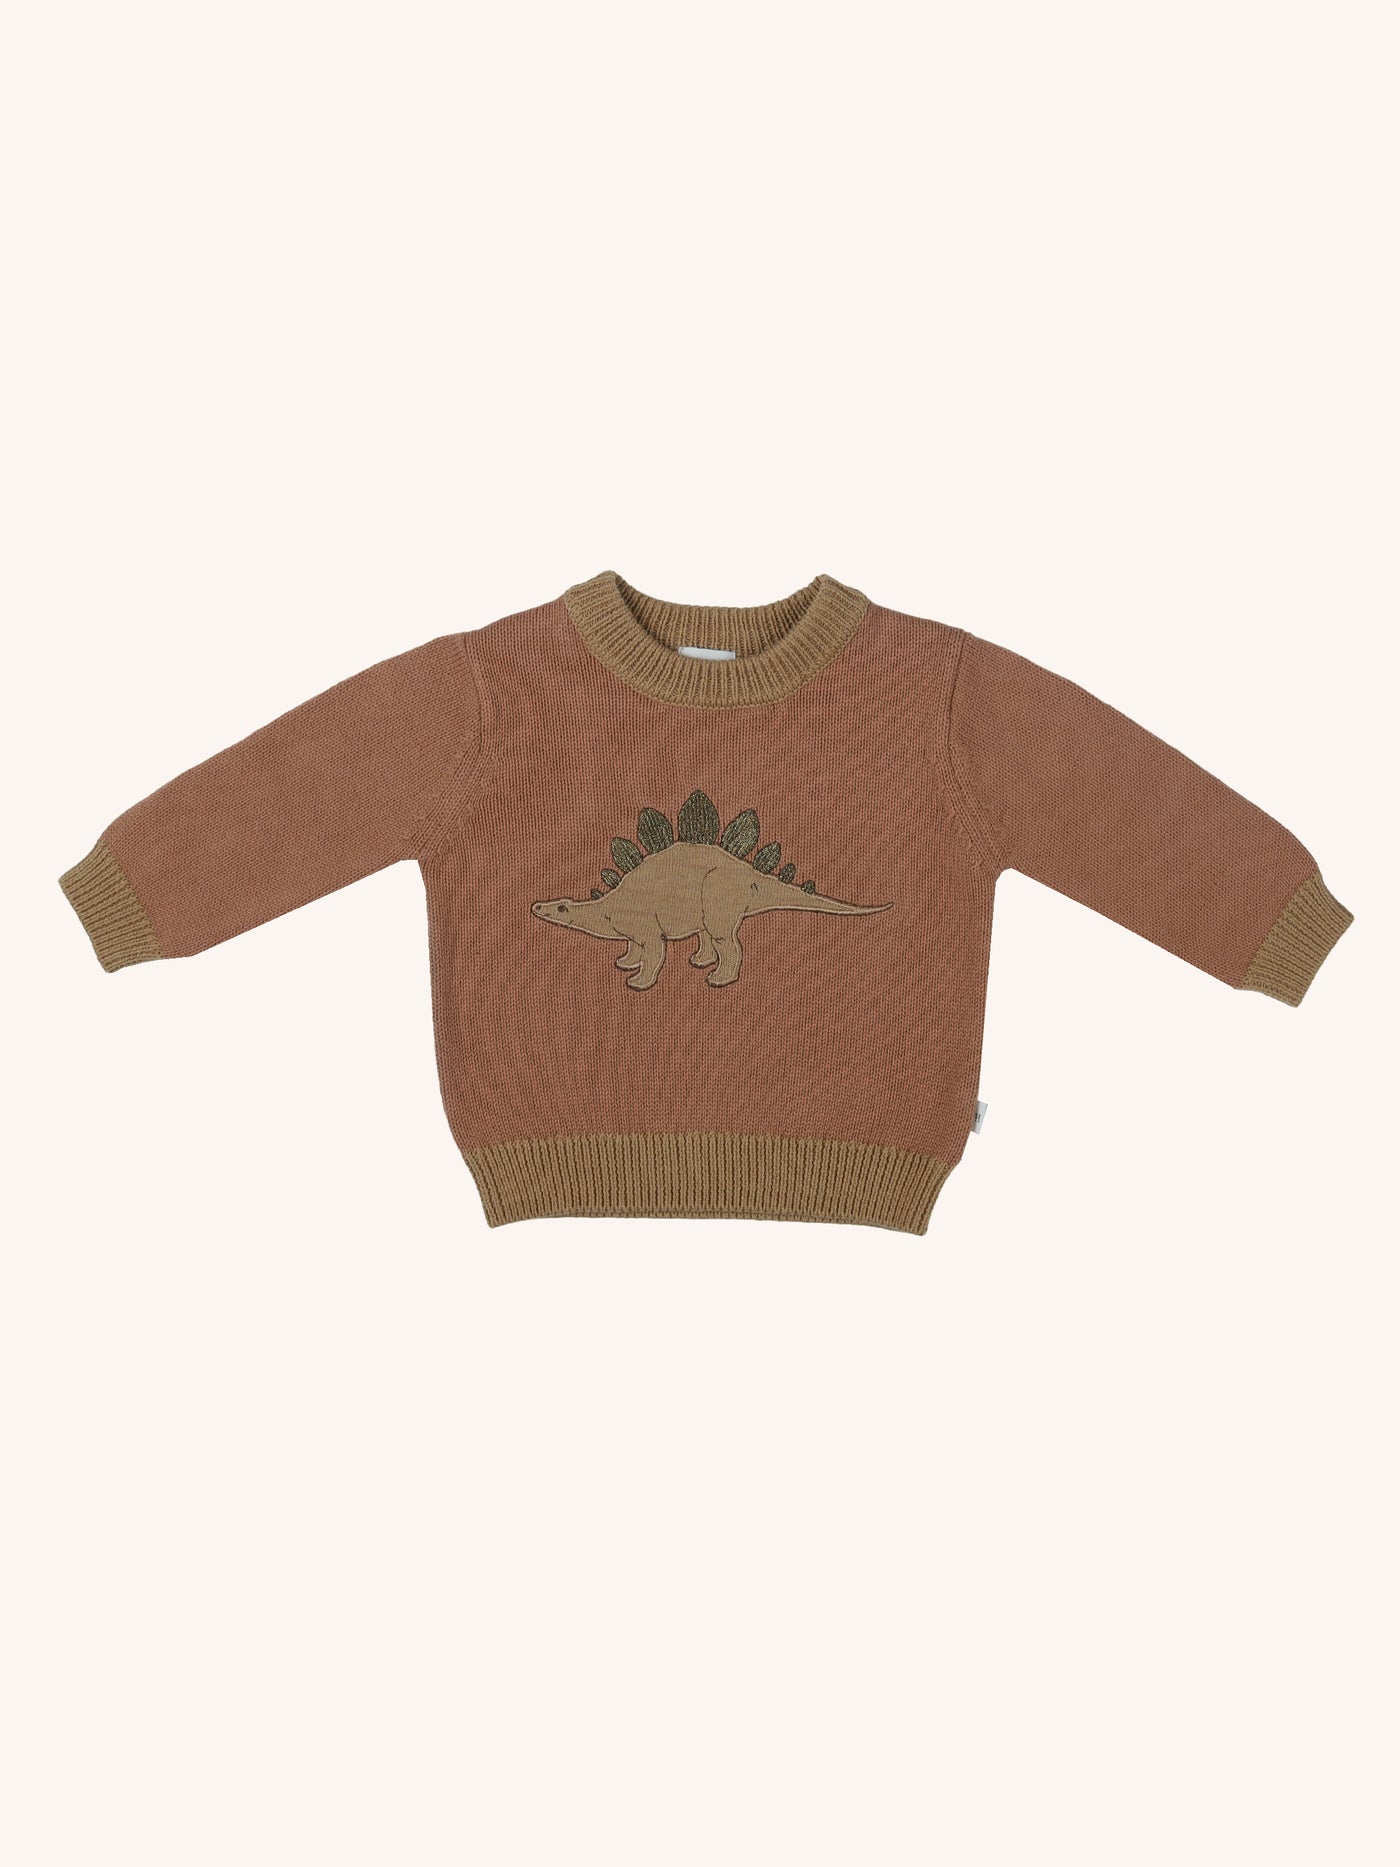 'Stegosaurus' Knit Jumper - Cedar